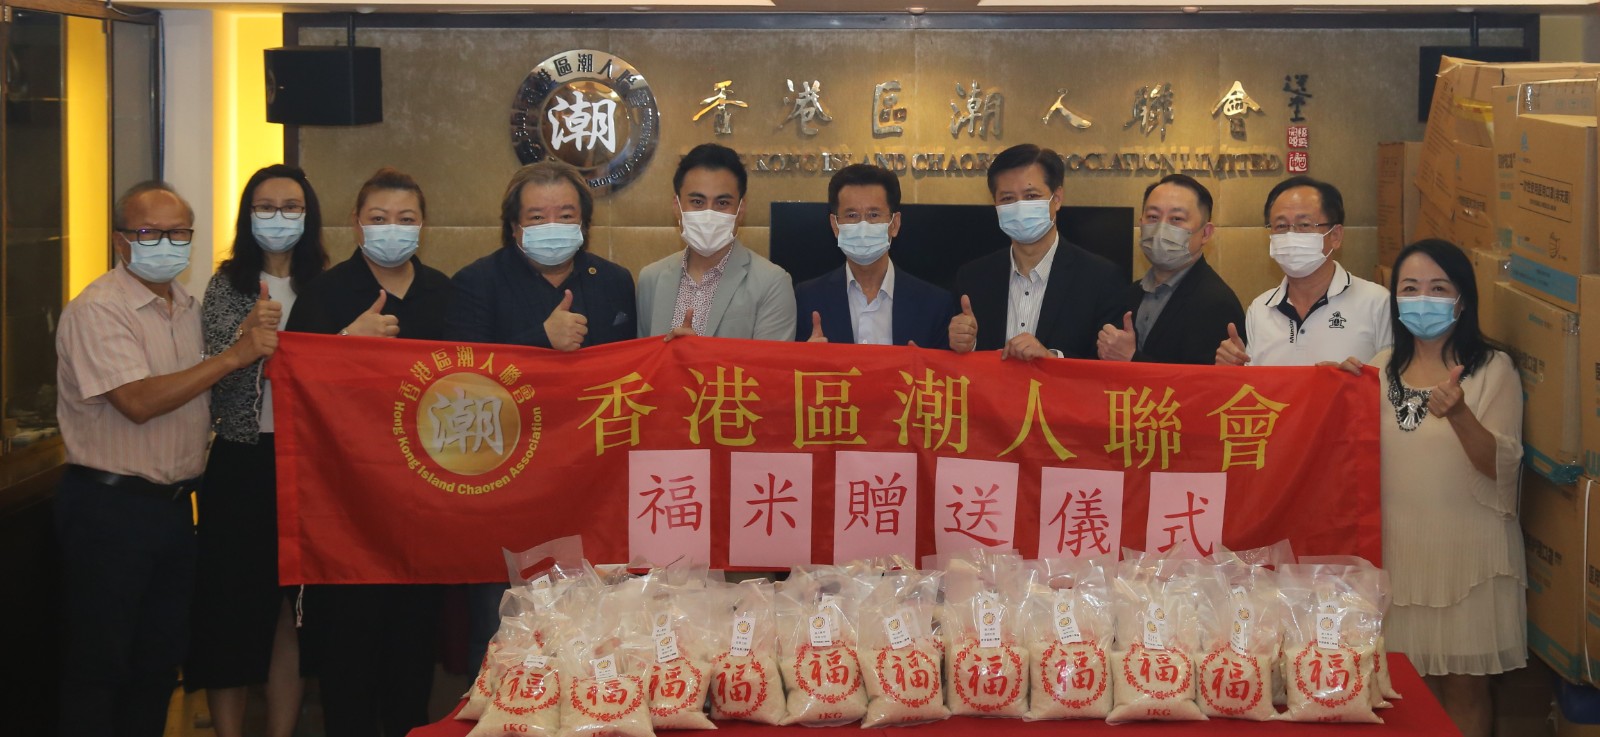 香港區潮人聯會舉辦福米贈送儀式-7